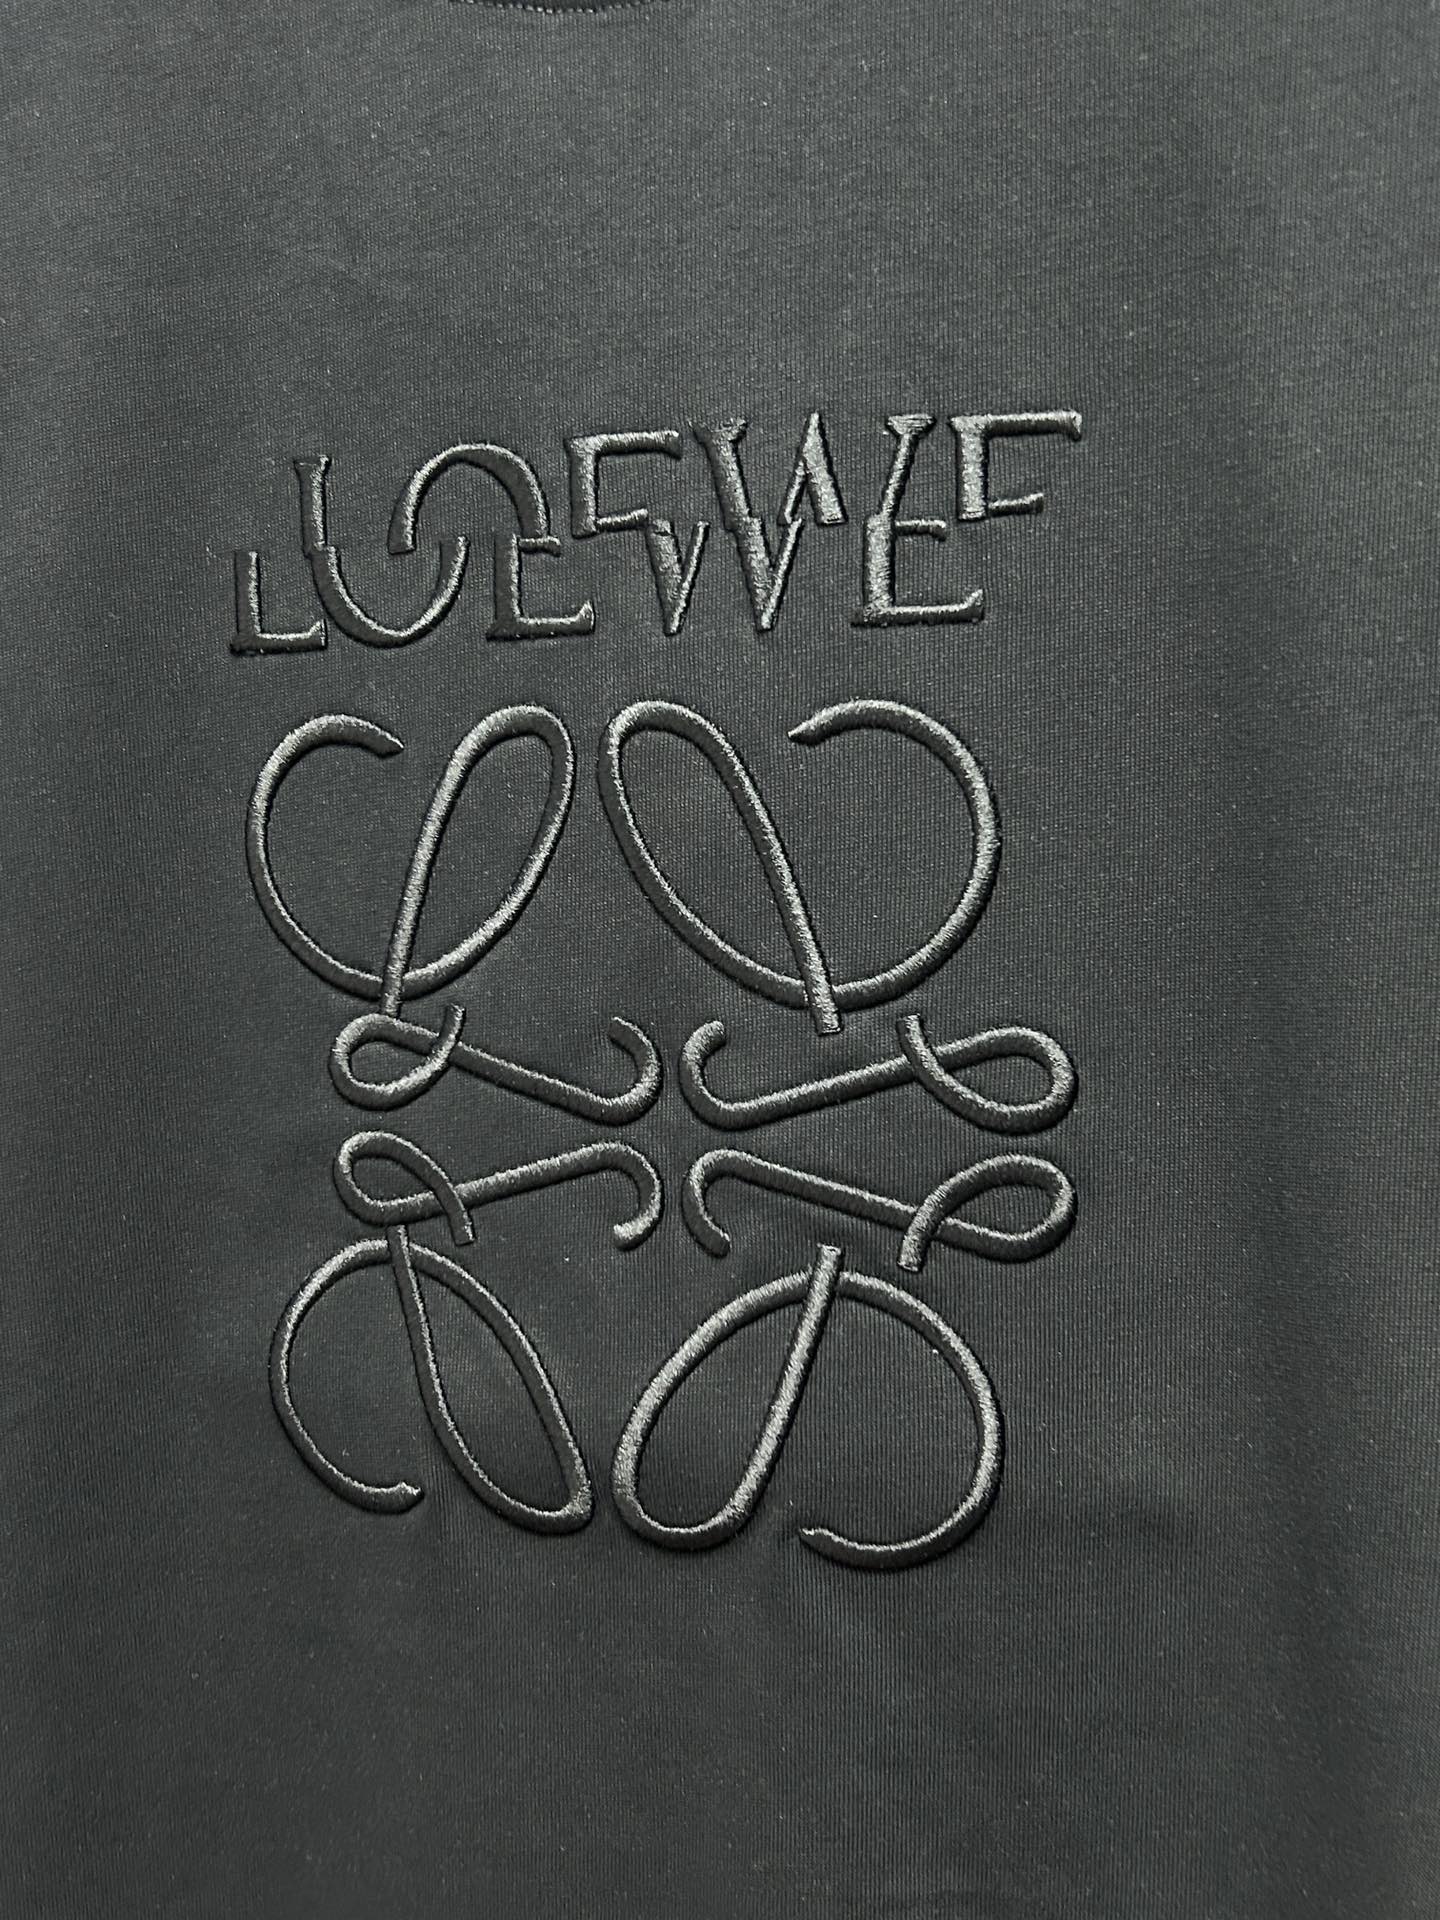 早春新款LOE错位LOGO刺绣圆领短袖原版1:1订制全进口原版定制欢迎专柜对比绝对的高品质面料做工杠杠的